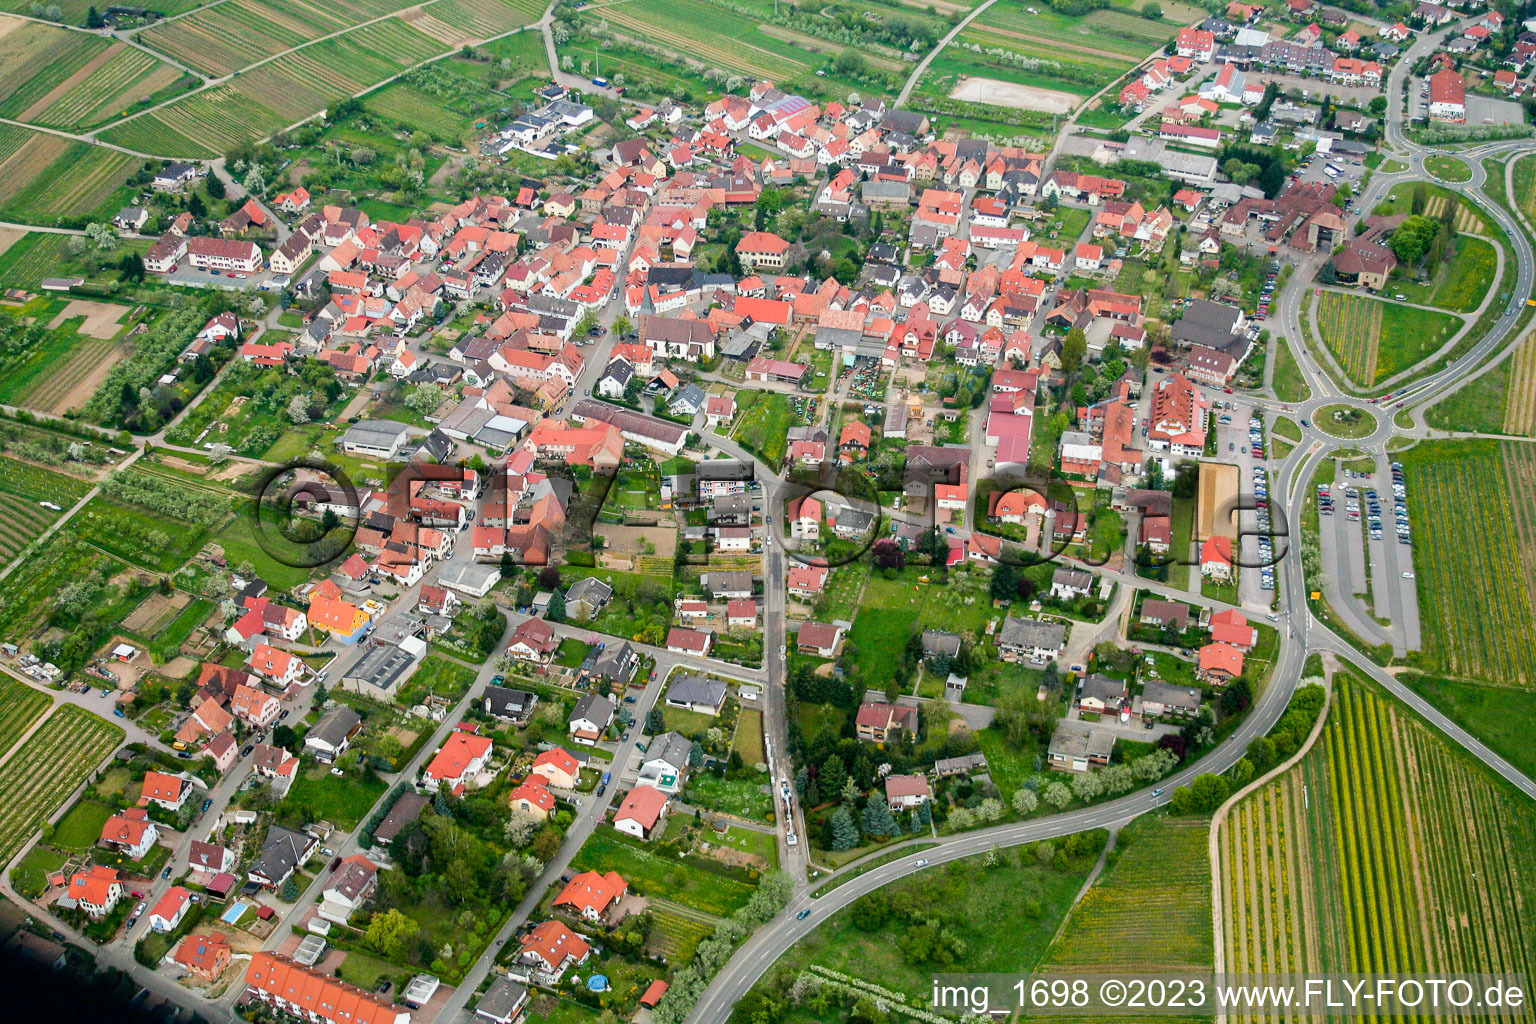 Quartier Schweigen in Schweigen-Rechtenbach dans le département Rhénanie-Palatinat, Allemagne vu d'un drone